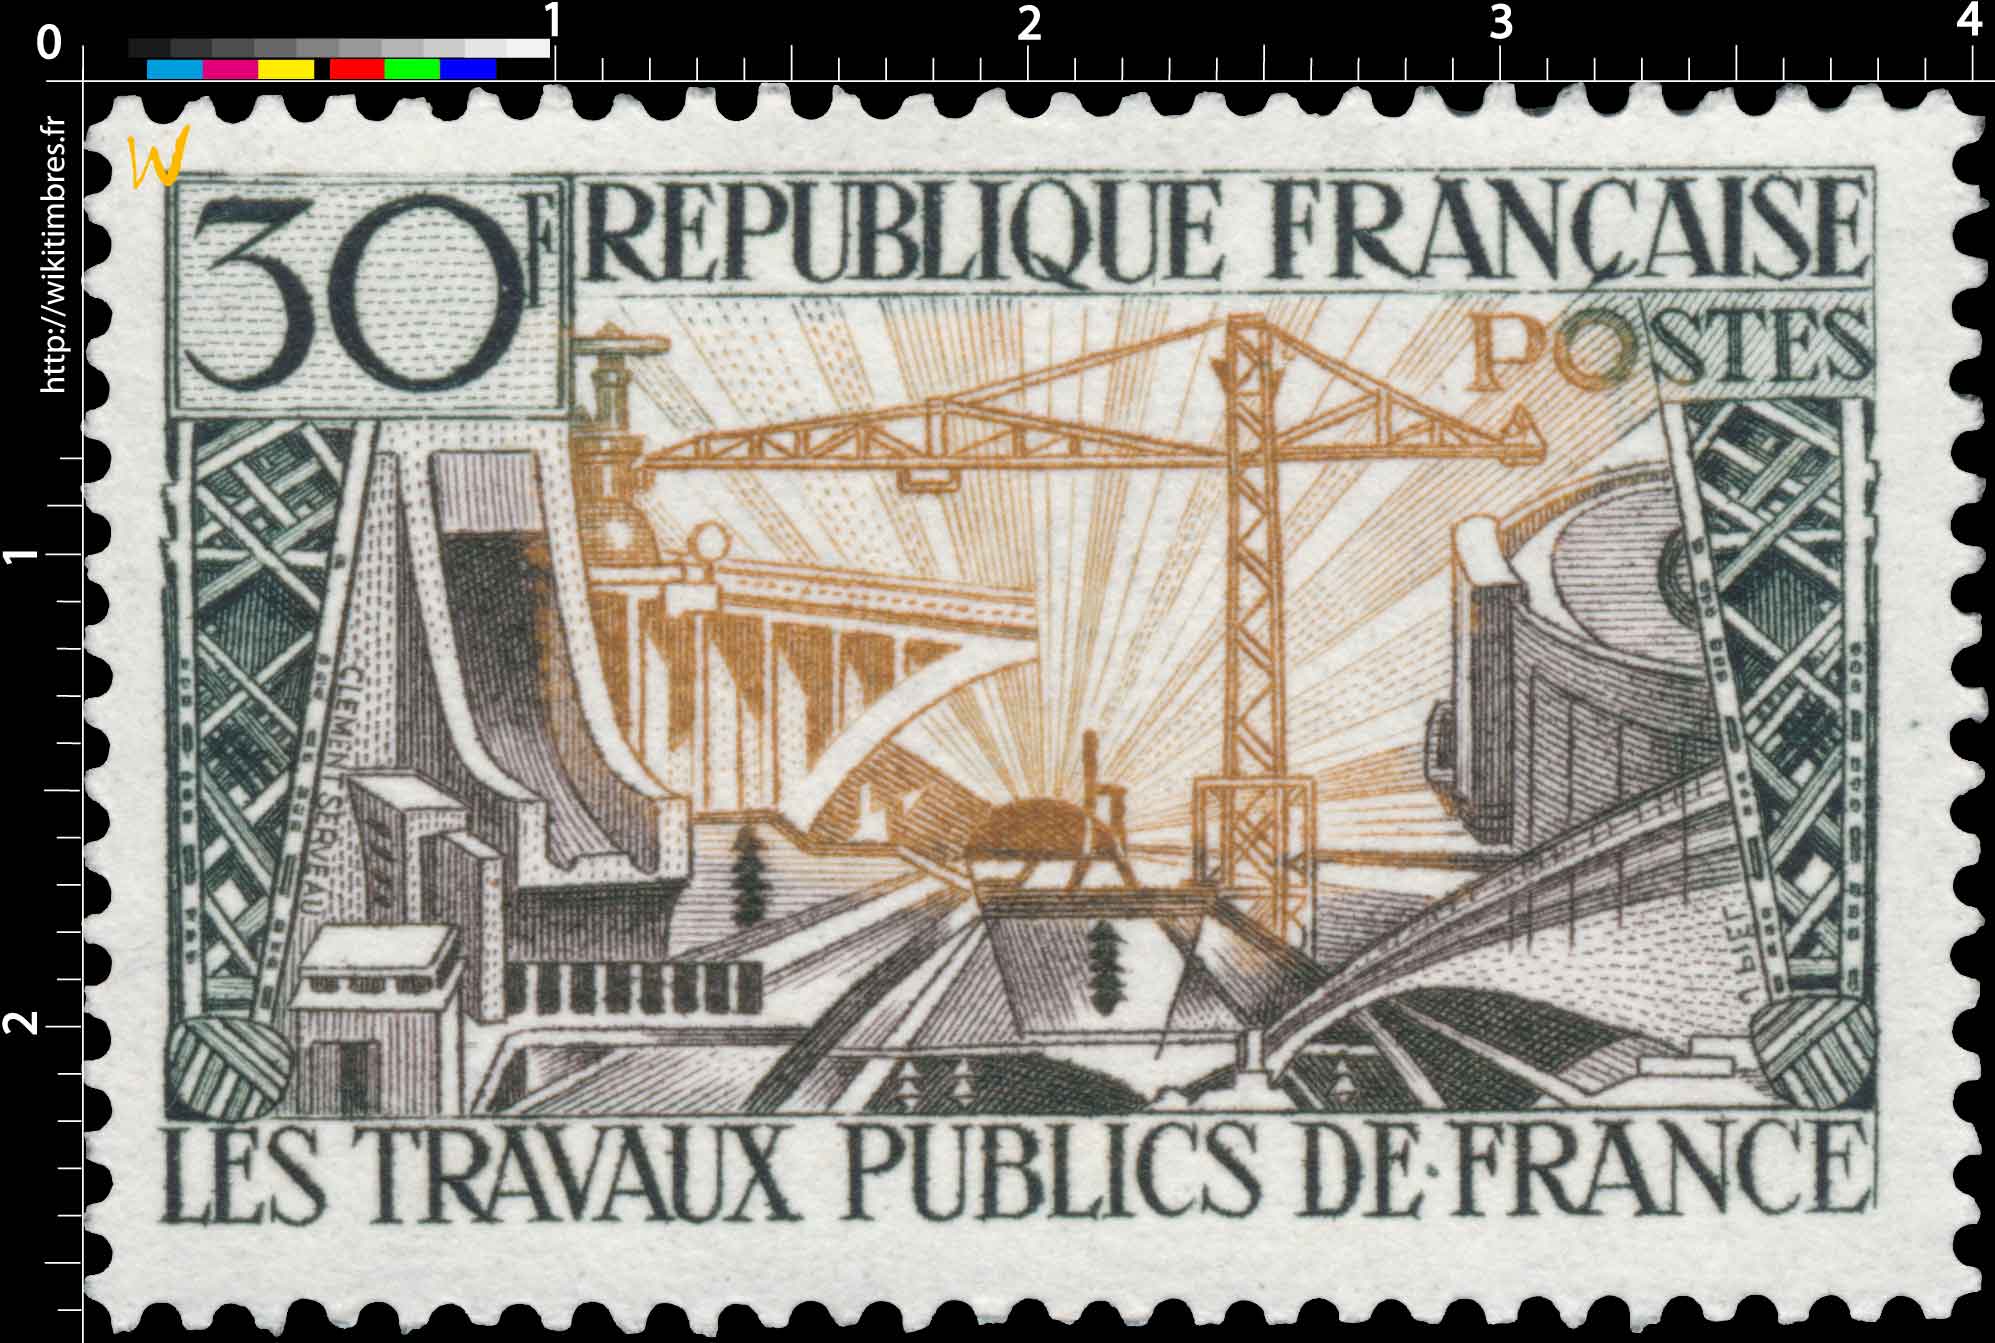 LES TRAVAUX PUBLICS DE FRANCE